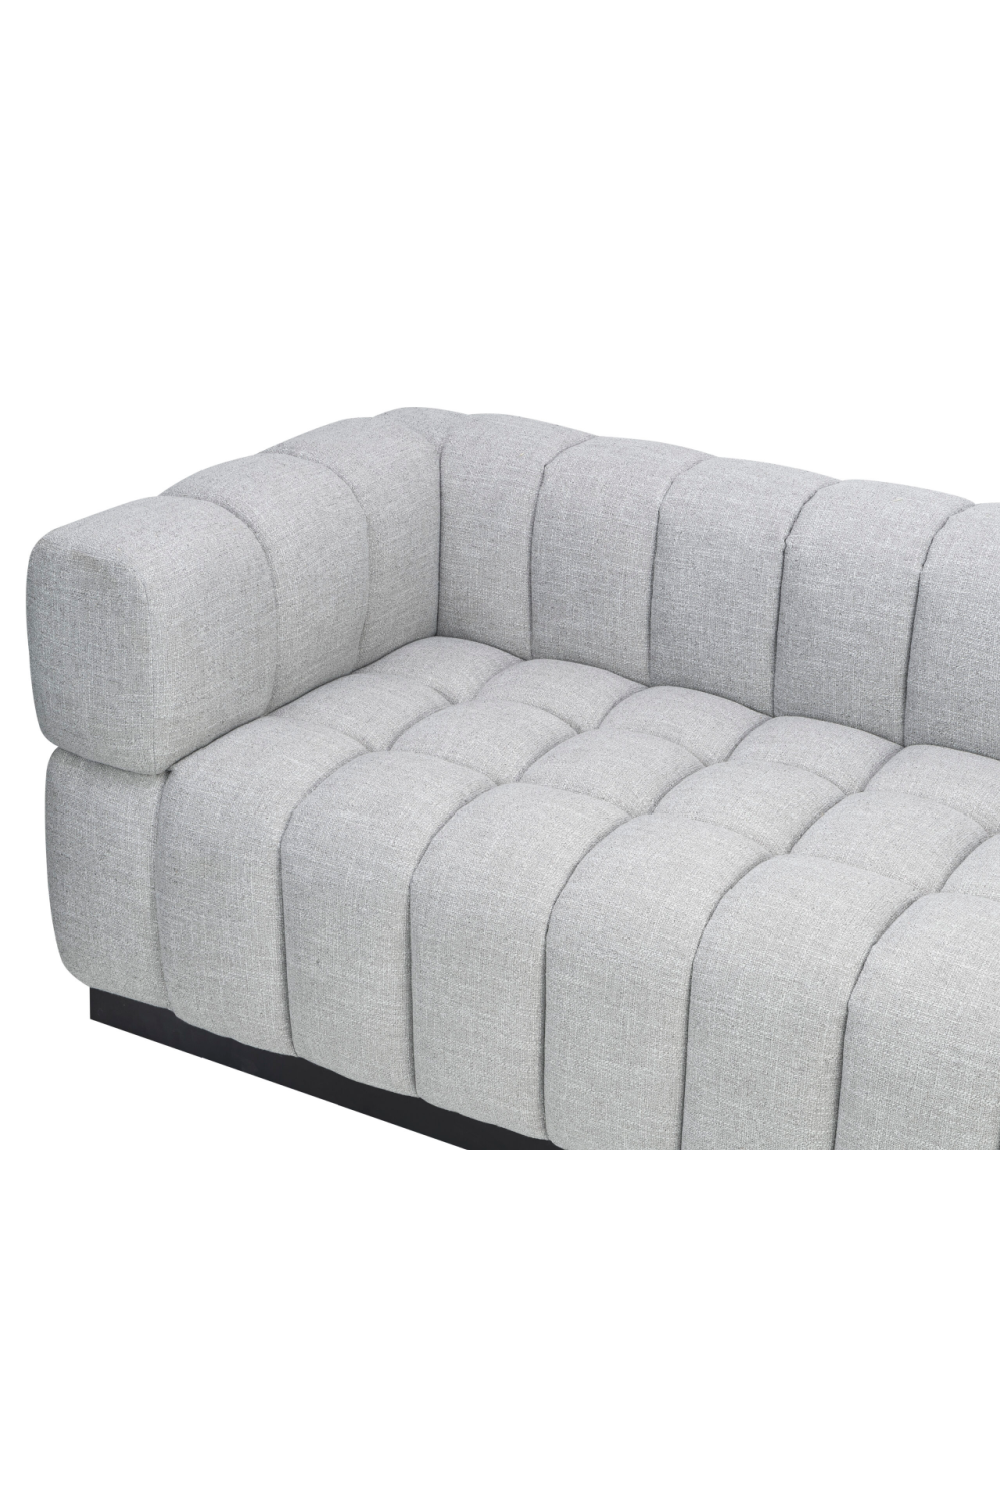 Light Gray Velvet Tufted Sofa | Liang & Eimil Marat | Oroa.com